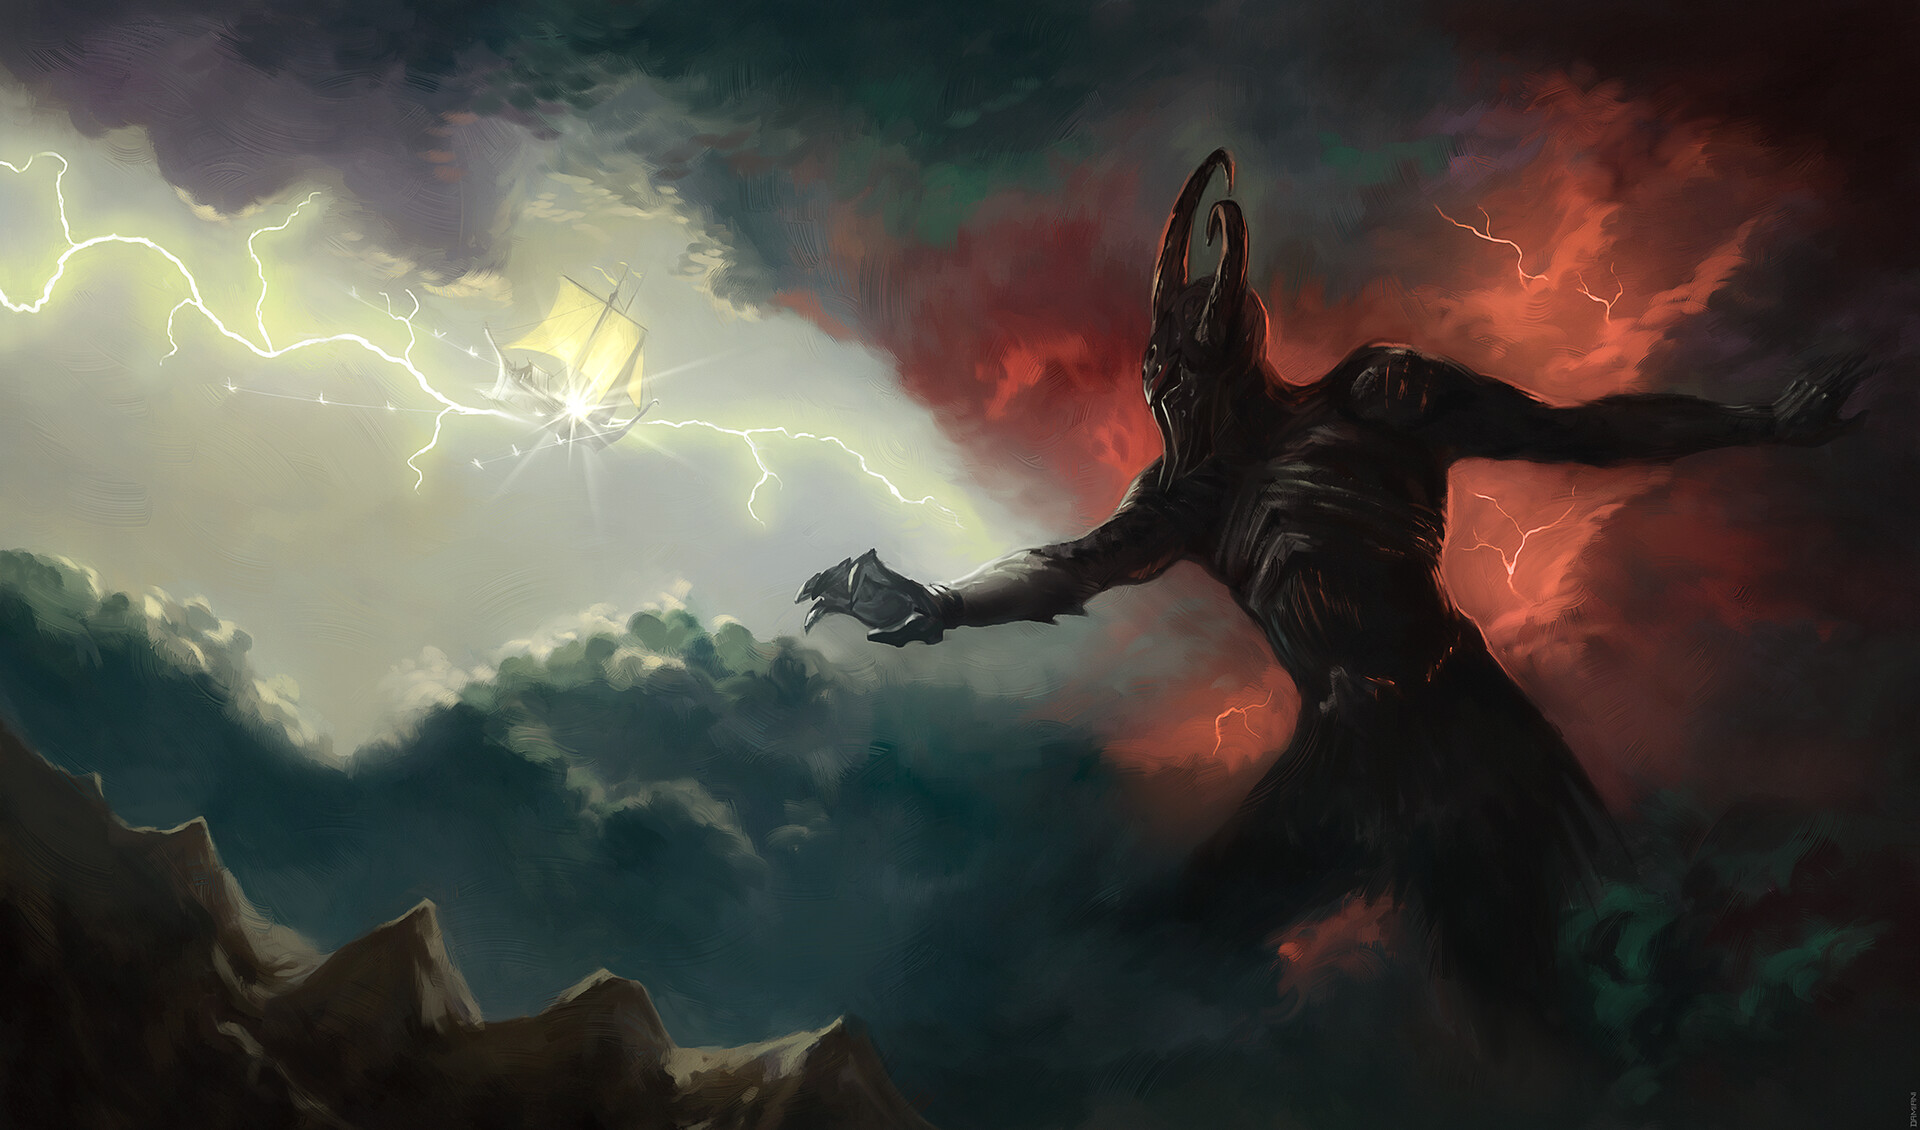 Conheça Dagor Dagorath, o apocalipse de O Senhor dos Anéis